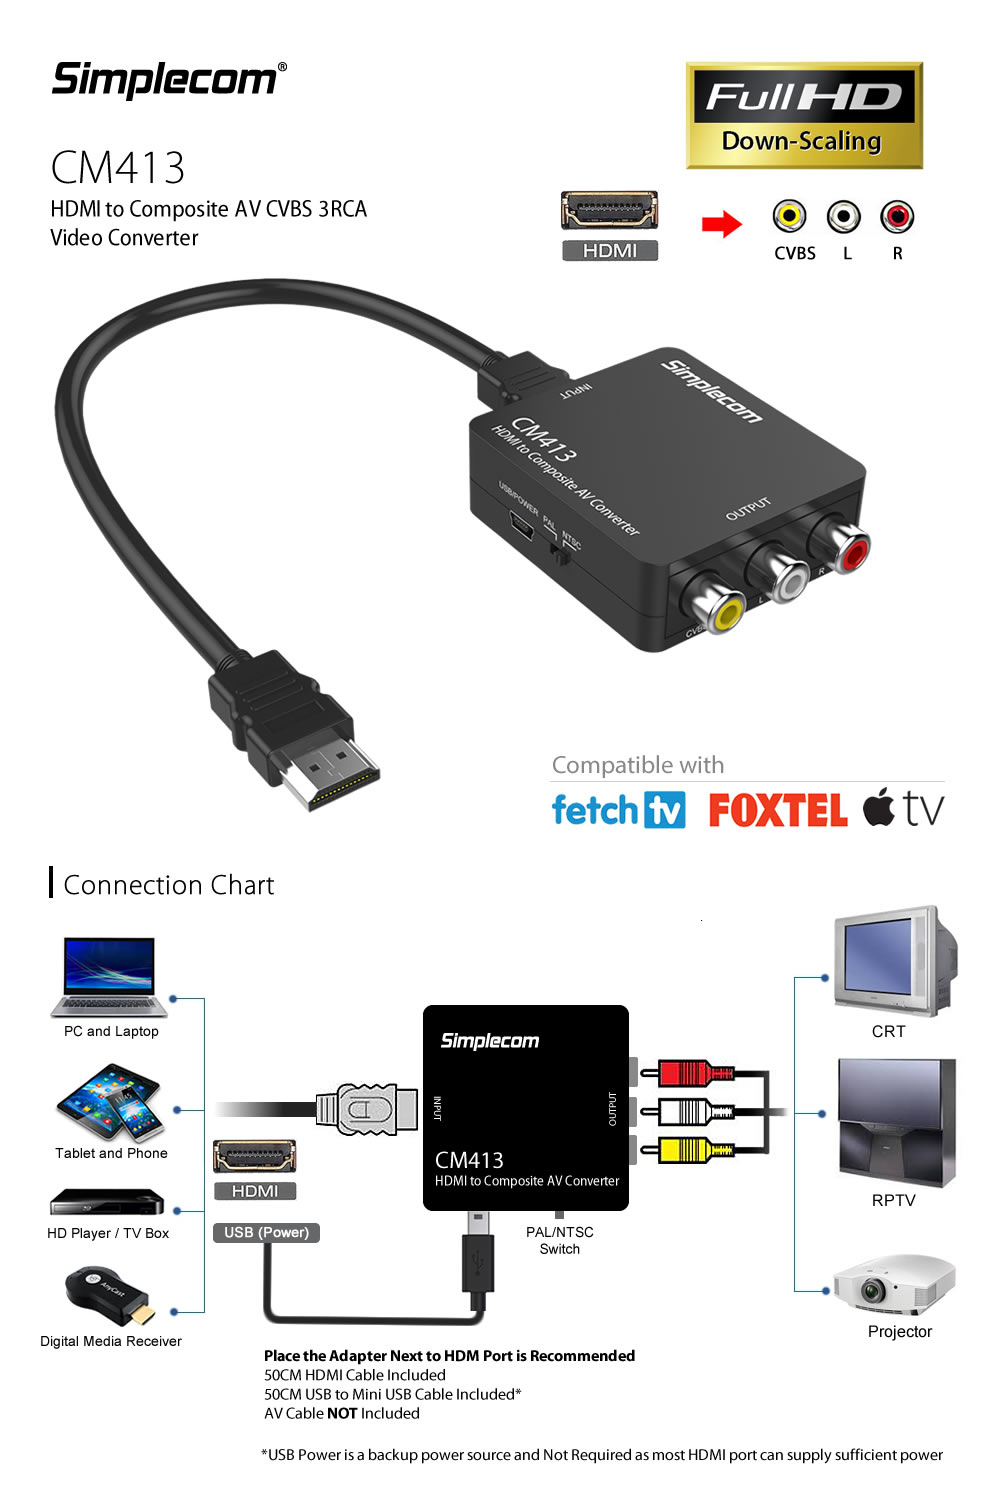 Simplecom CM413 HDMI to Composite AV CVBS 3RCA Video Converter 1080p Downscaling 1